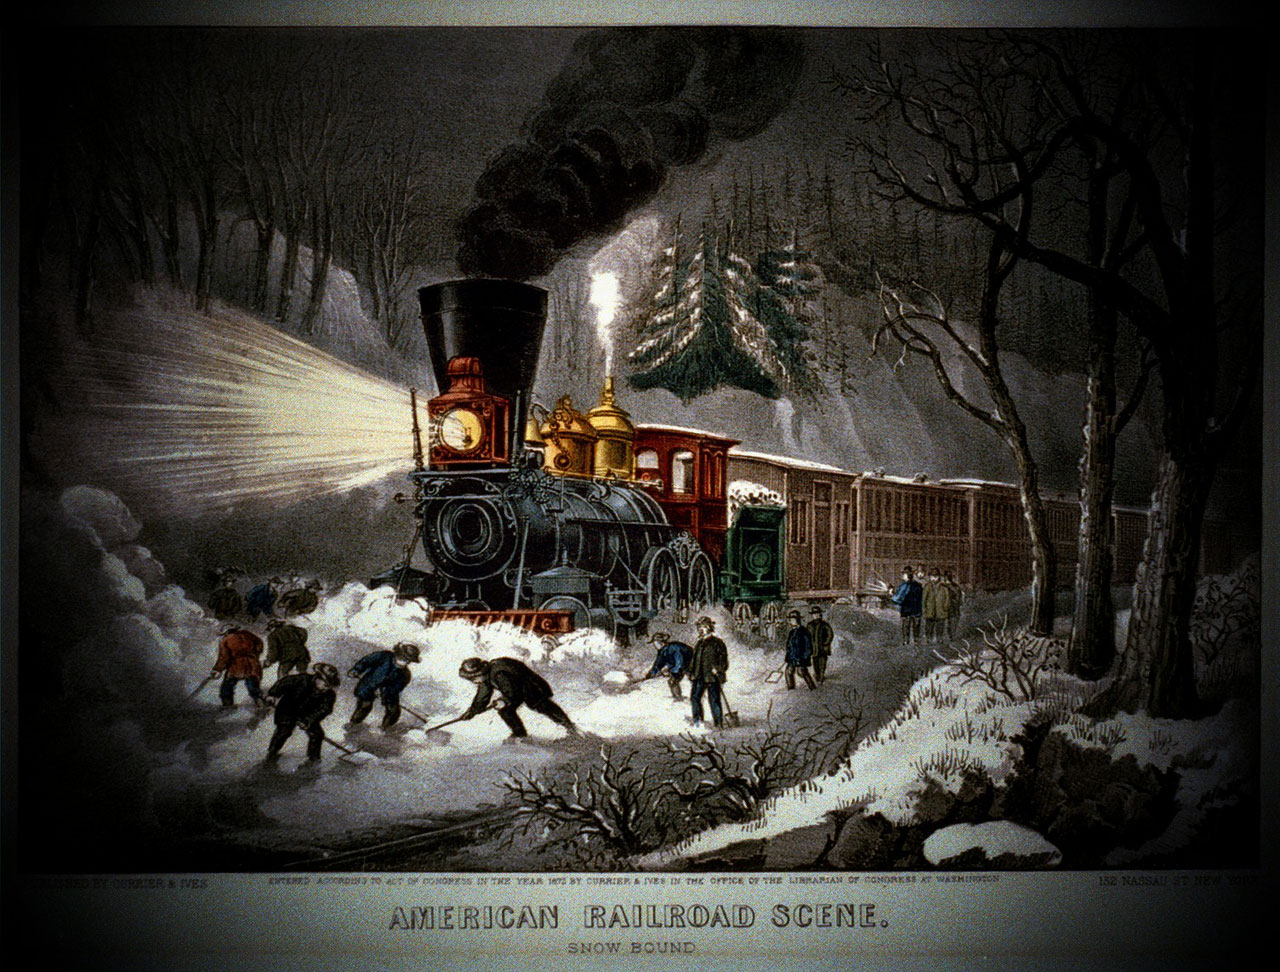 American Railroad Scene